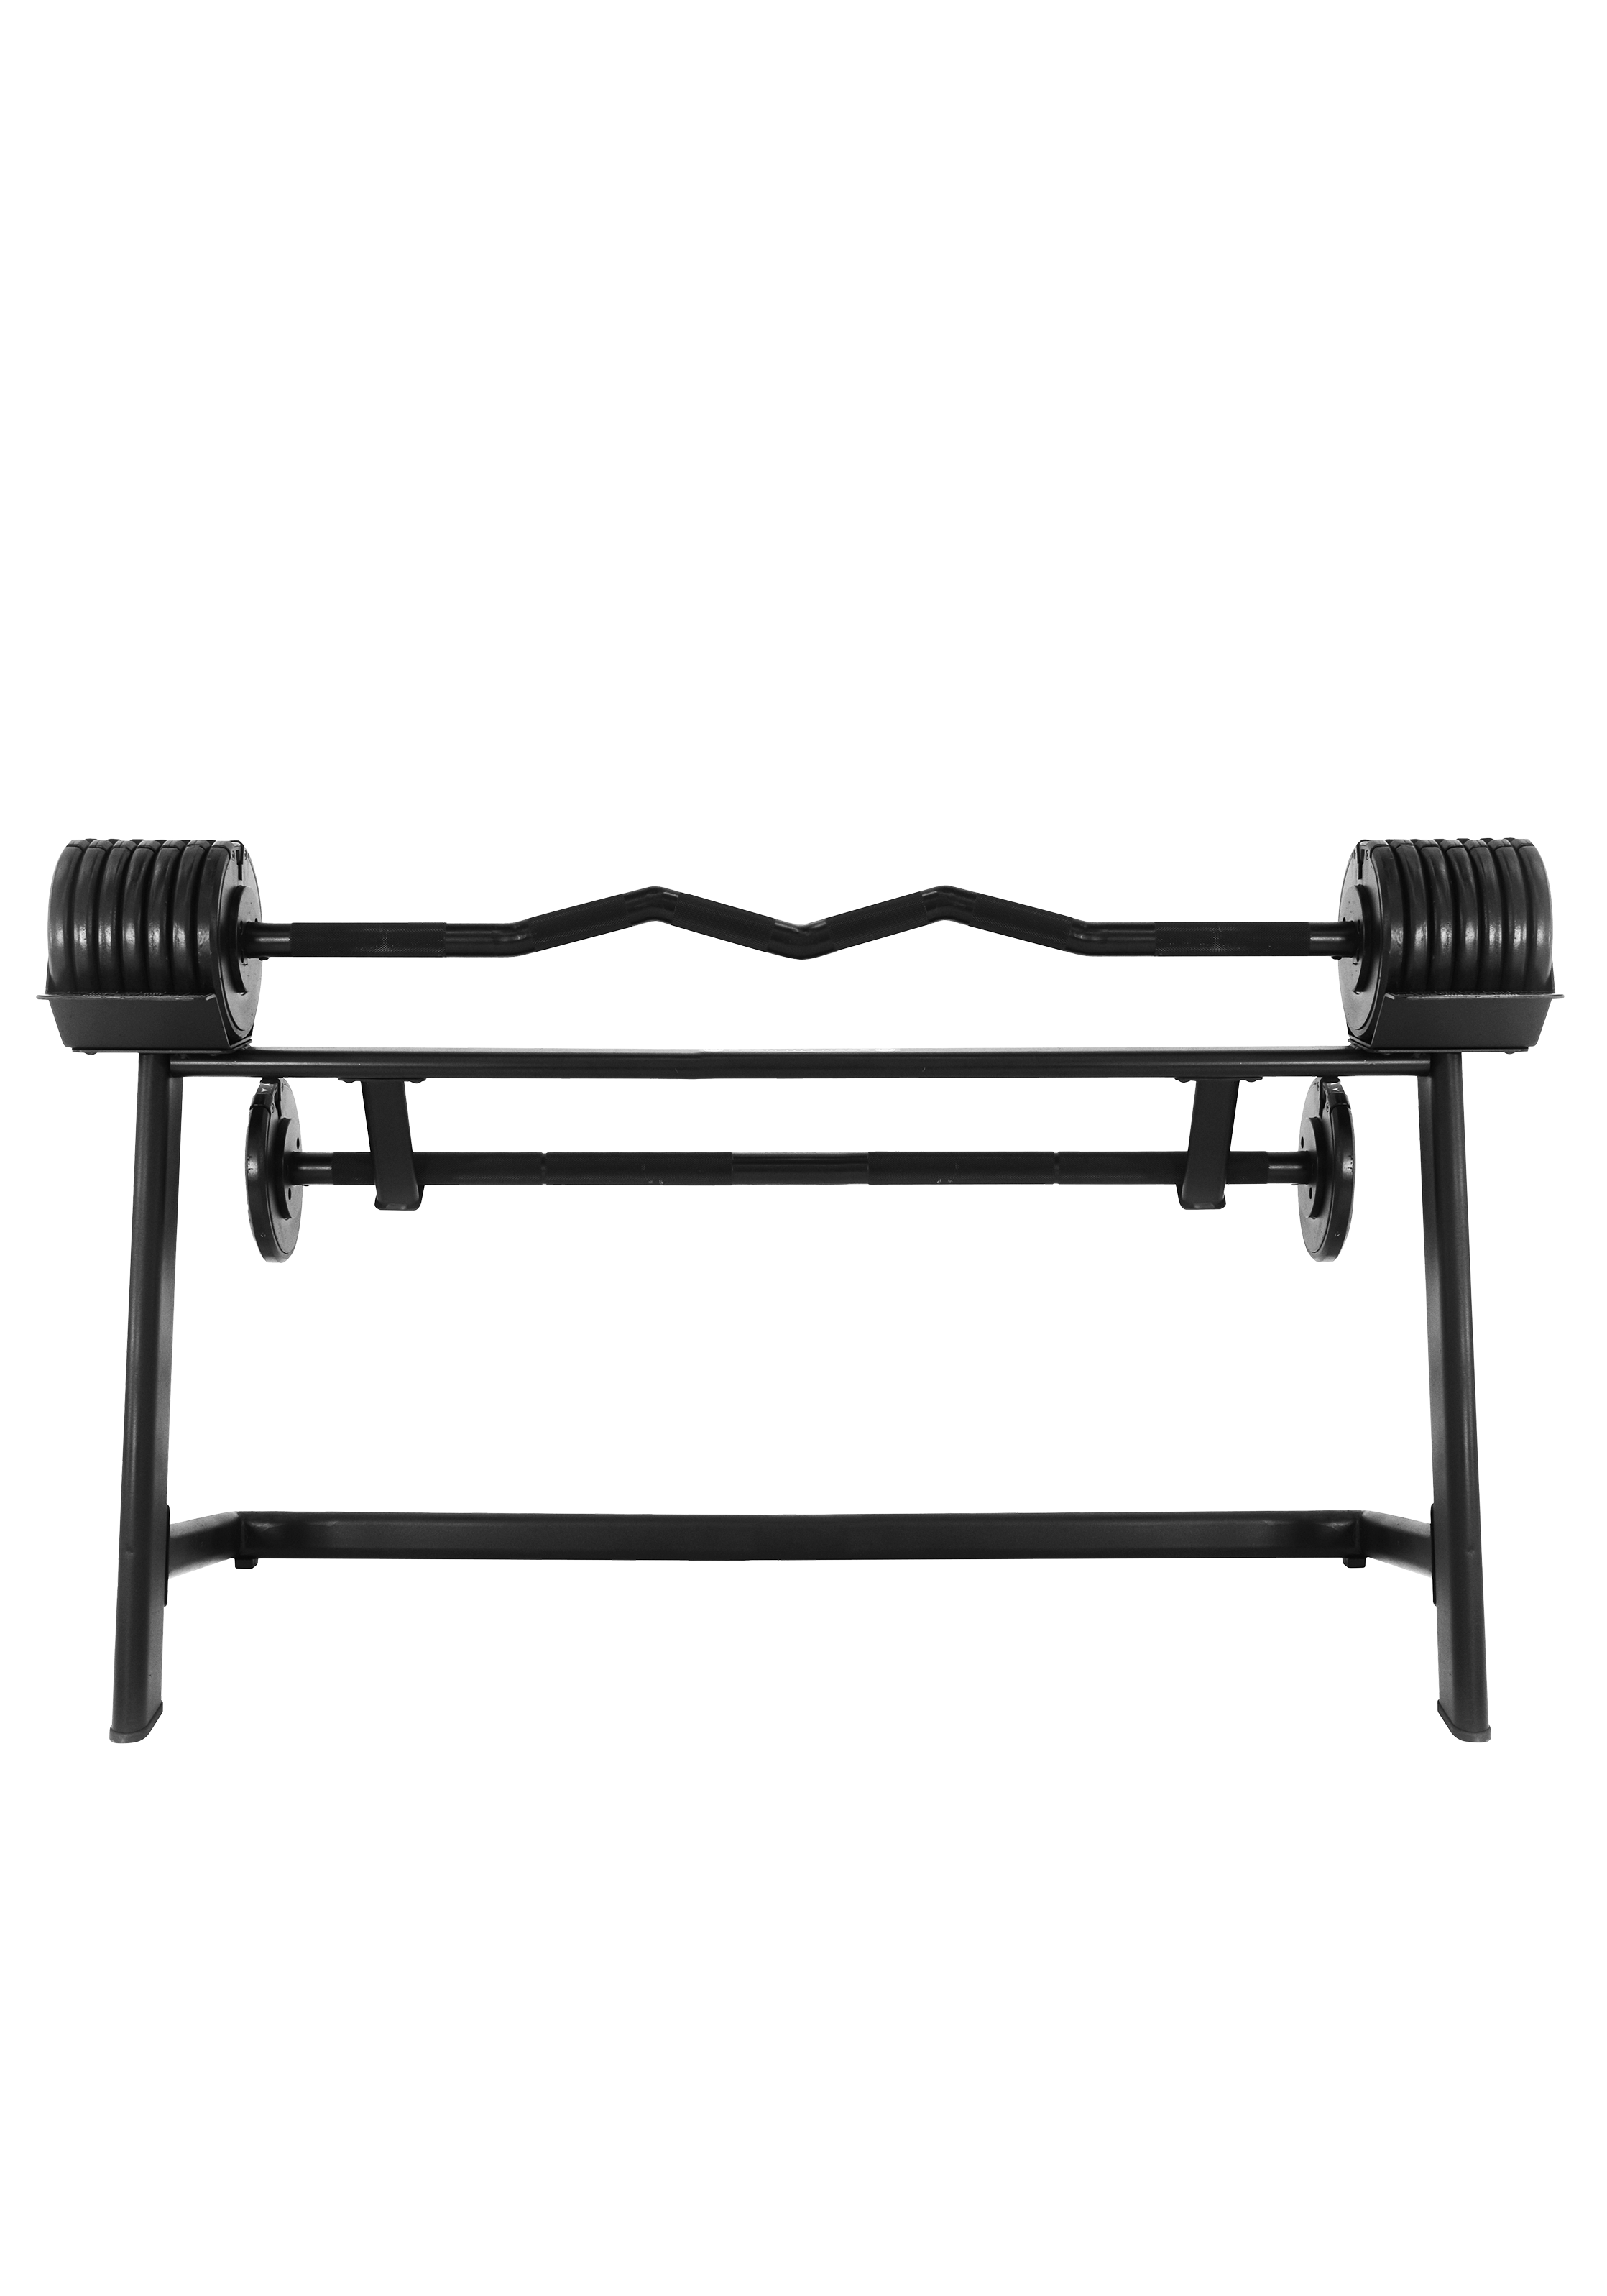 PRF Adjustable Barbell set 7-36kg - Black